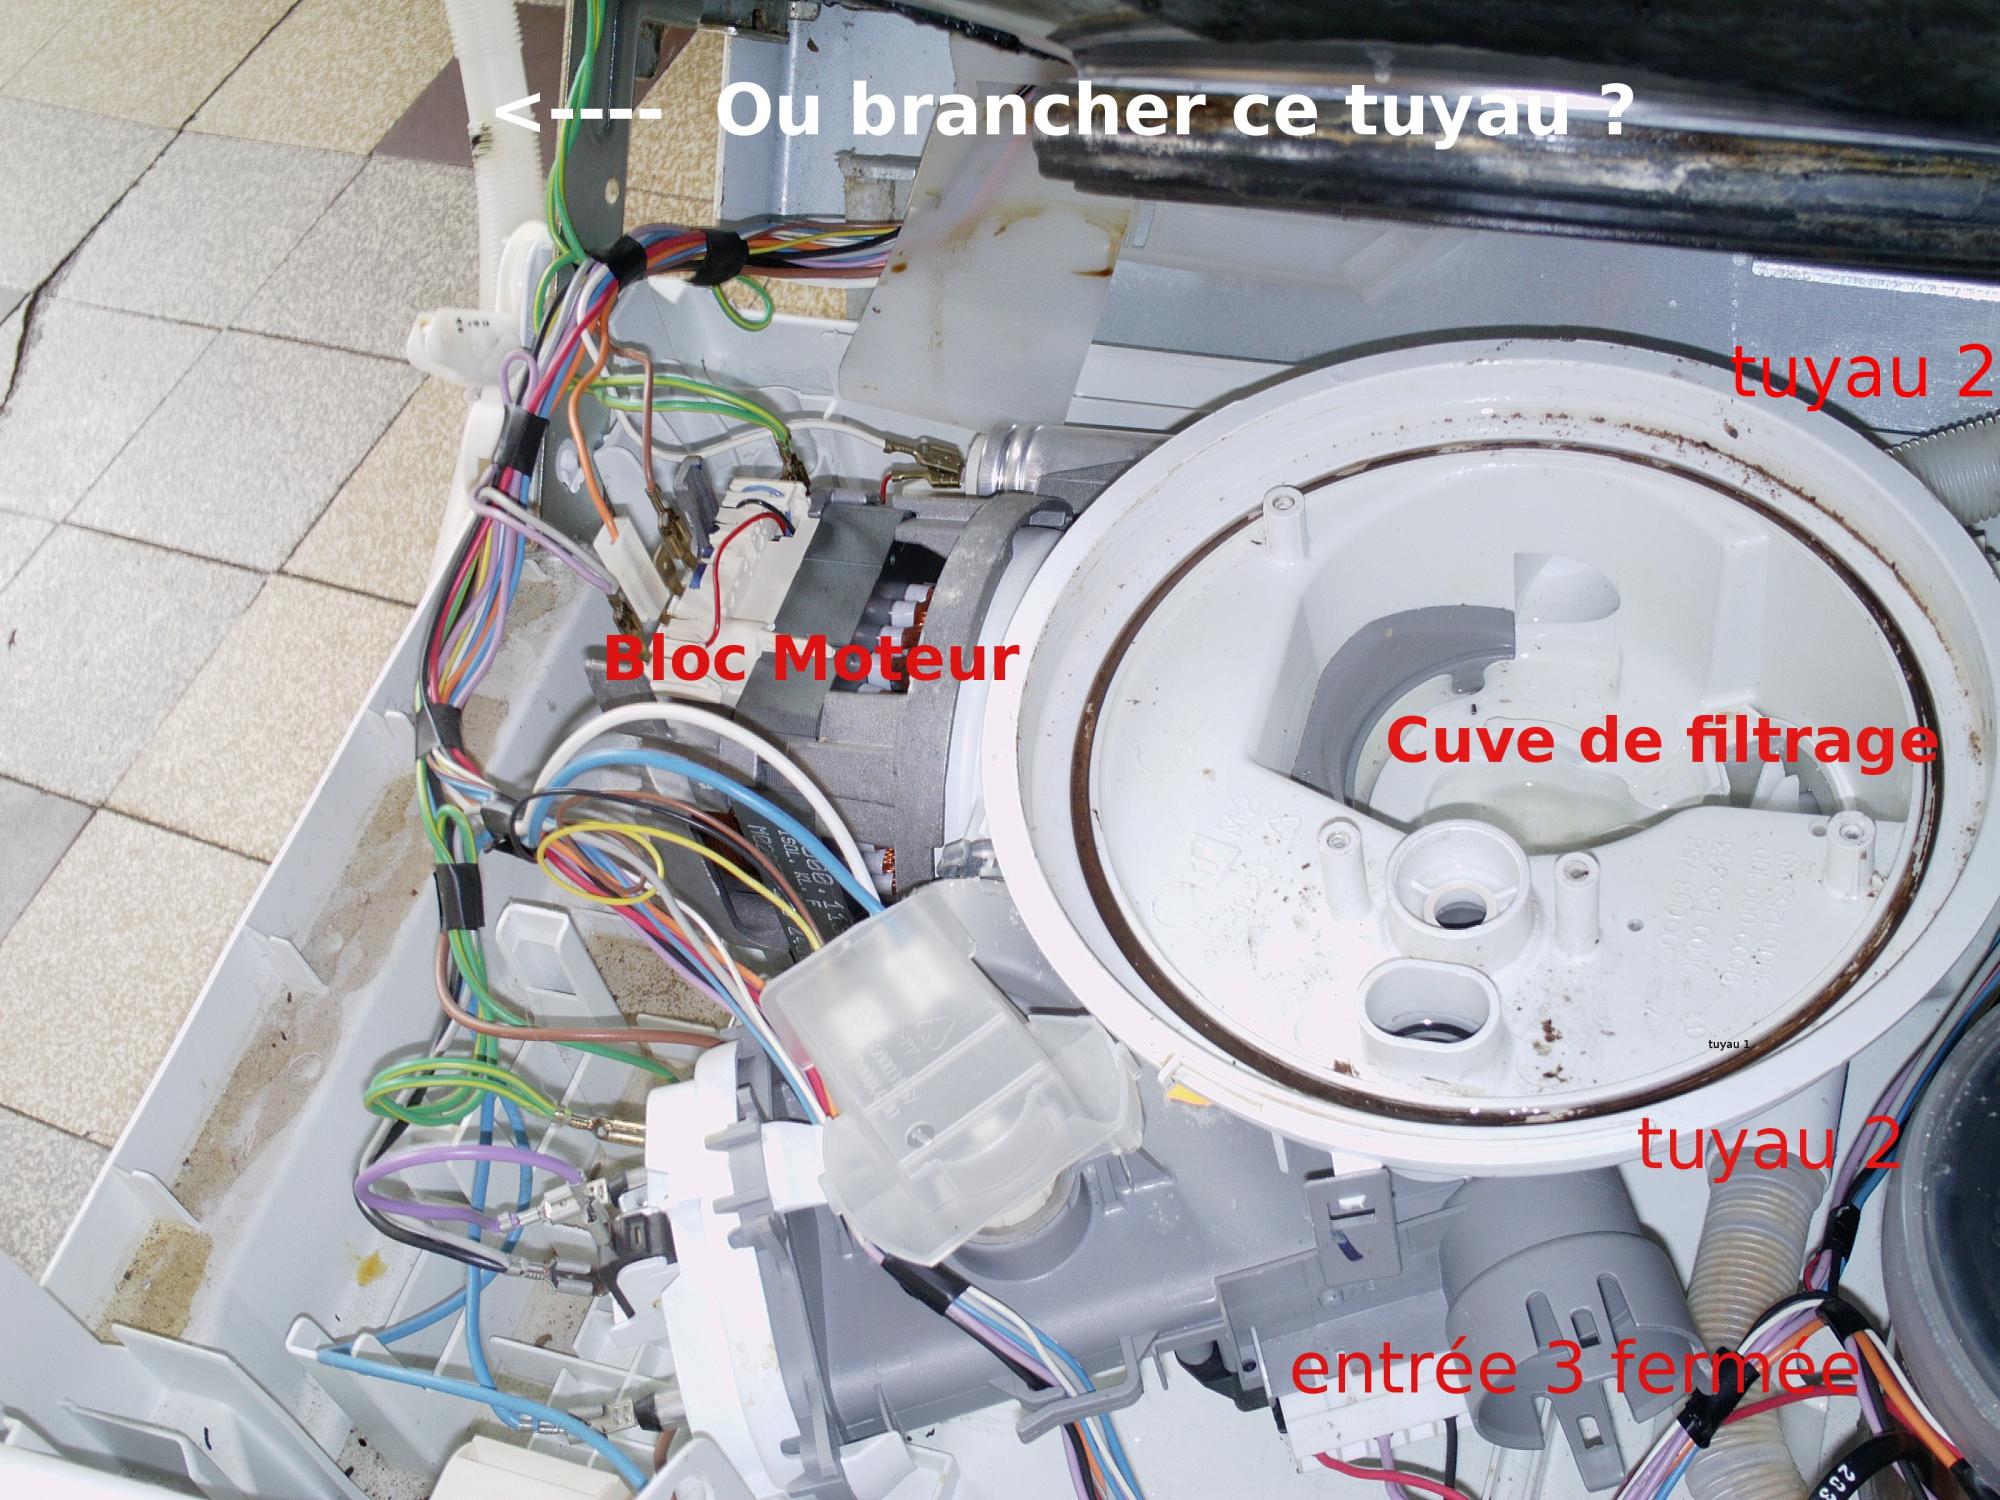 Installation lave-vaisselle Bosch